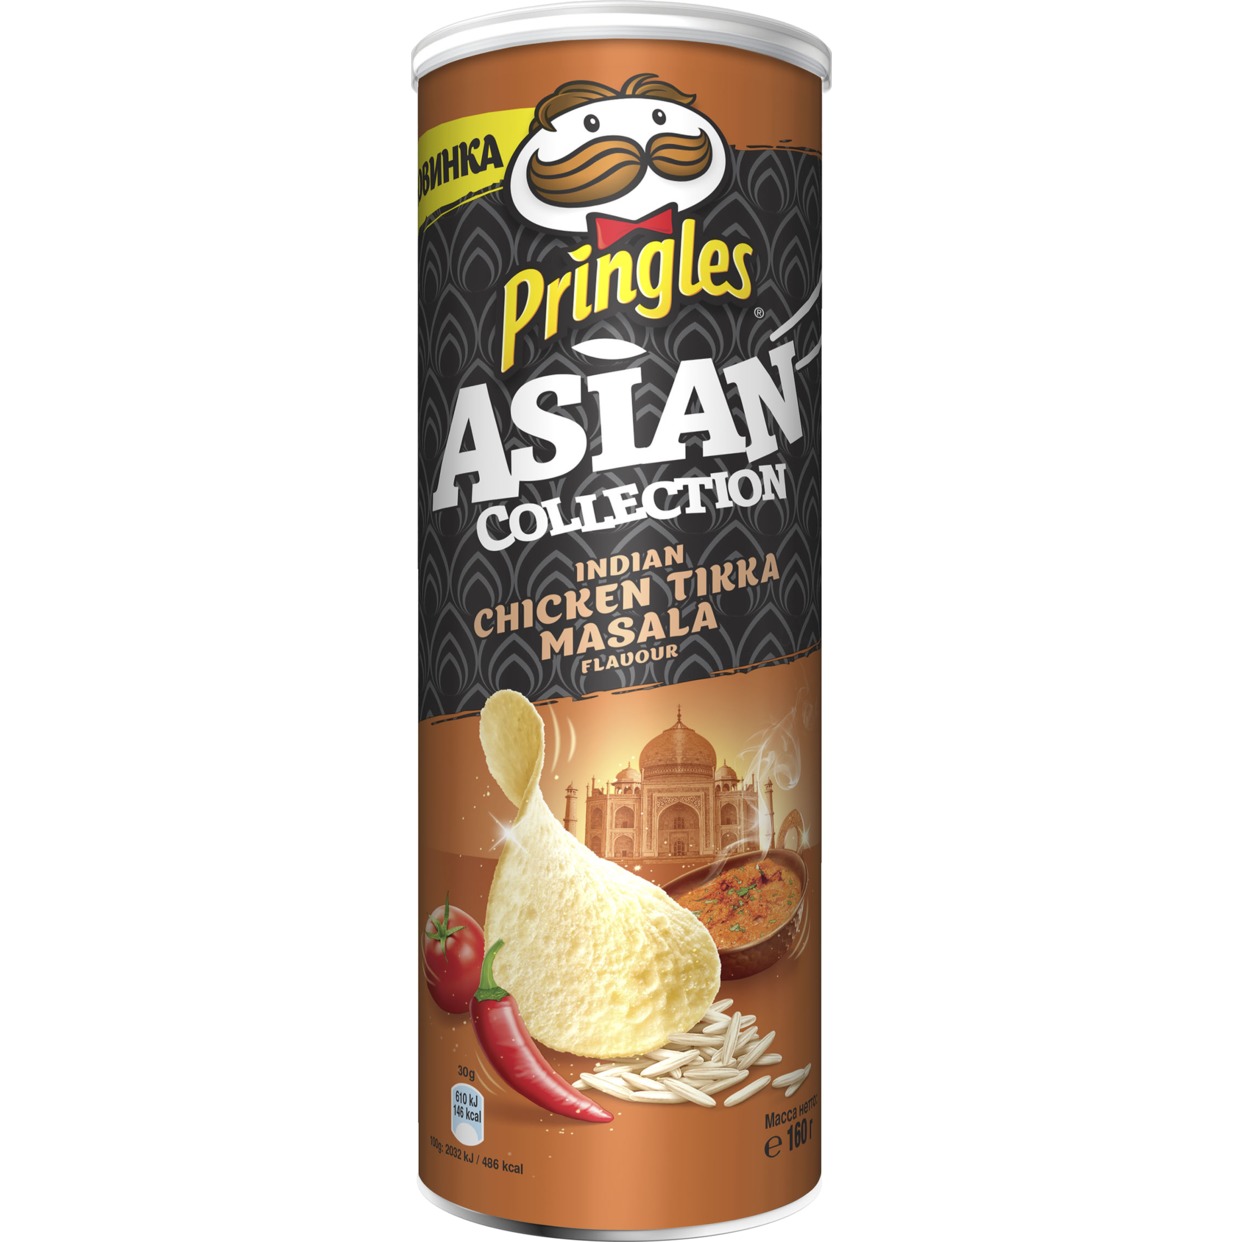 Рисовые чипсы Pringles "Asian Collection" со вкусом курицы с индийскими специями "Тикка Масала", 160 гр по акции в Пятерочке